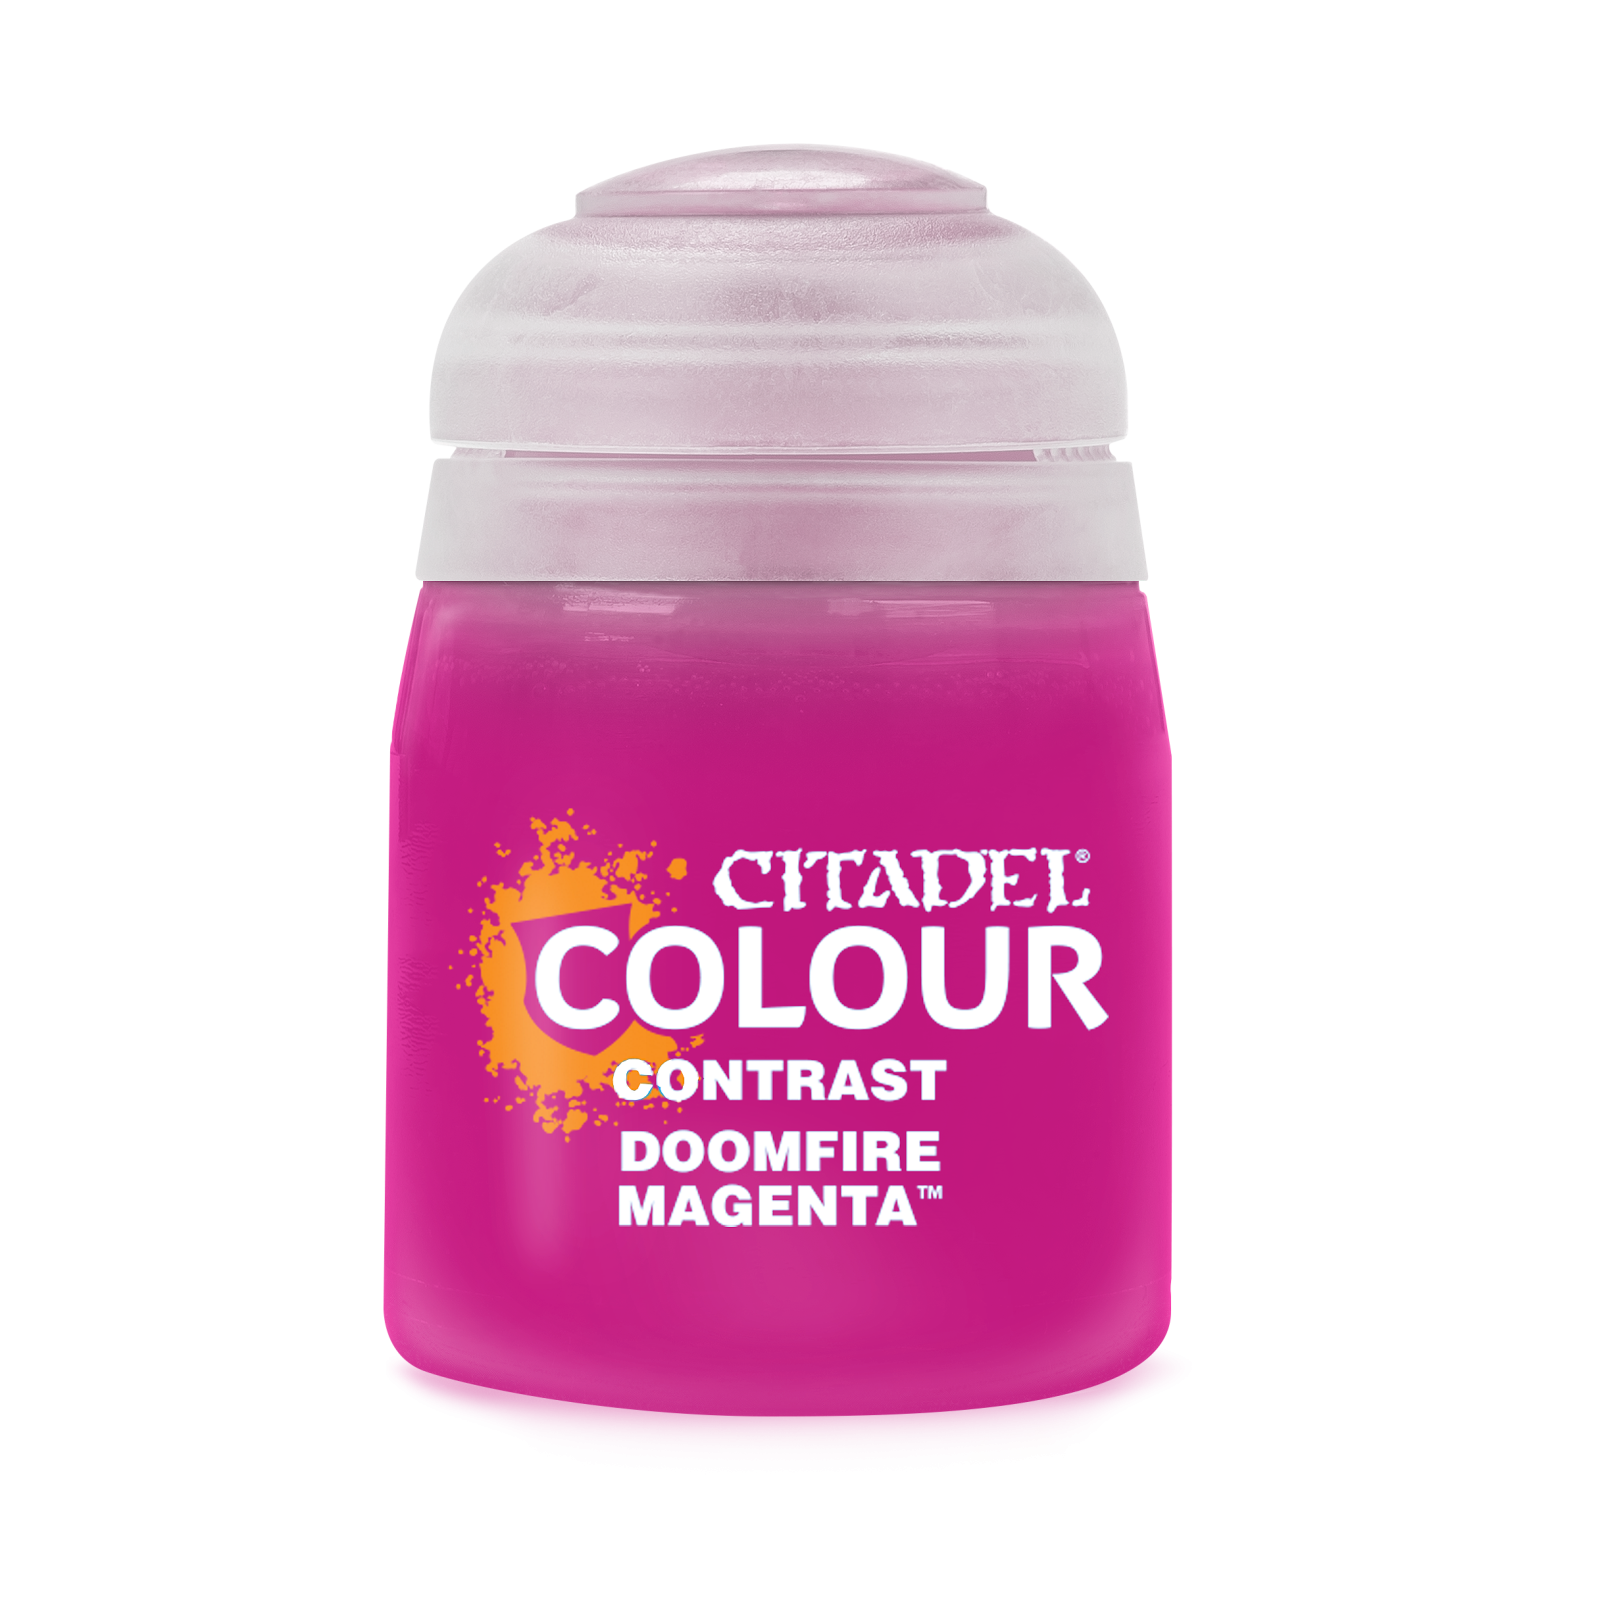 Citadel Colour, Contrast: DoomFire Magenta